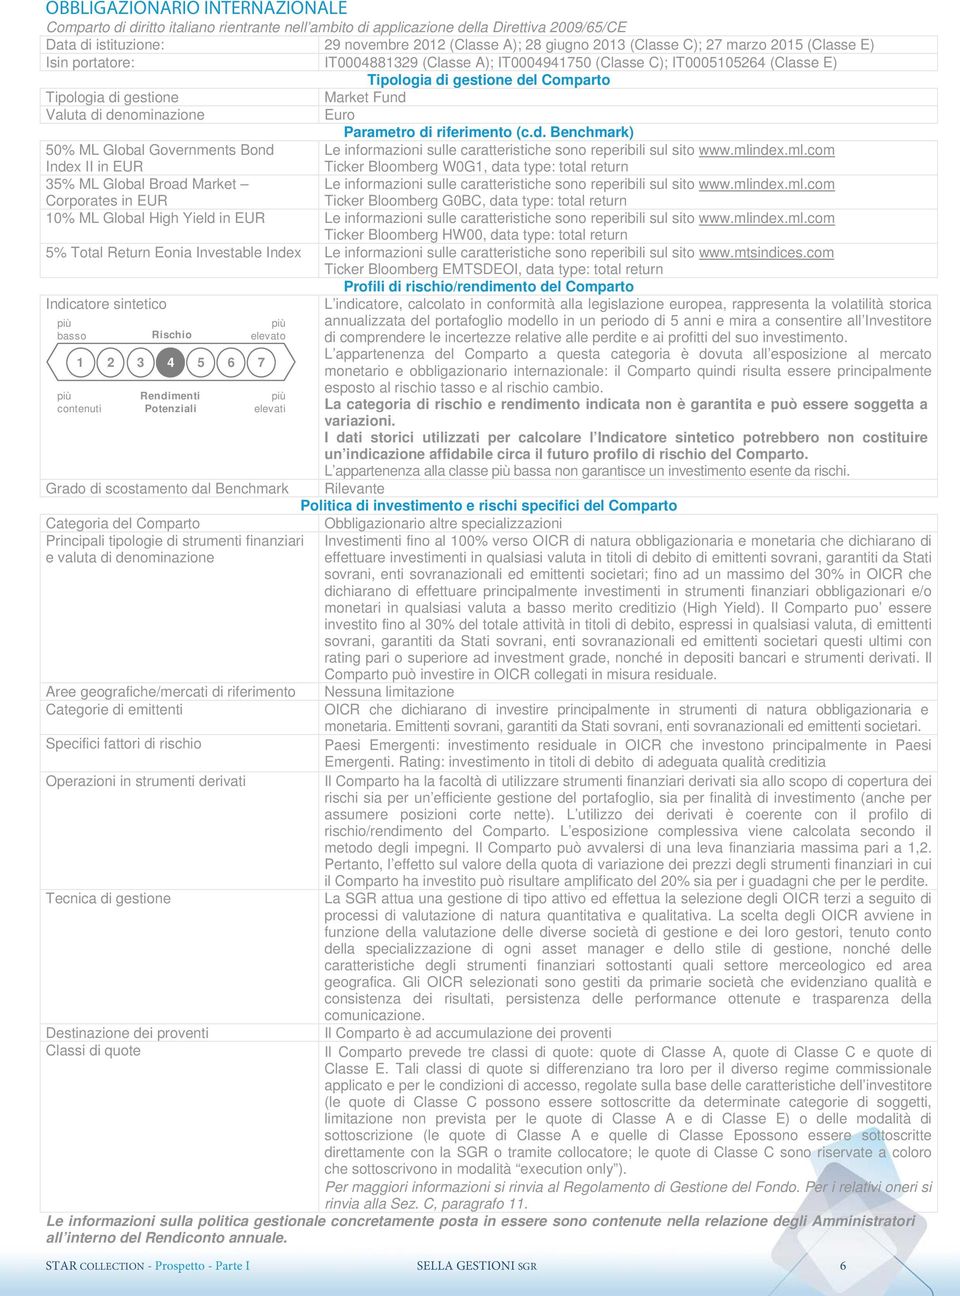 Euro Parametro di riferimento (c.d. Benchmark) Le informazioni sulle caratteristiche sono reperibili sul sito www.mli